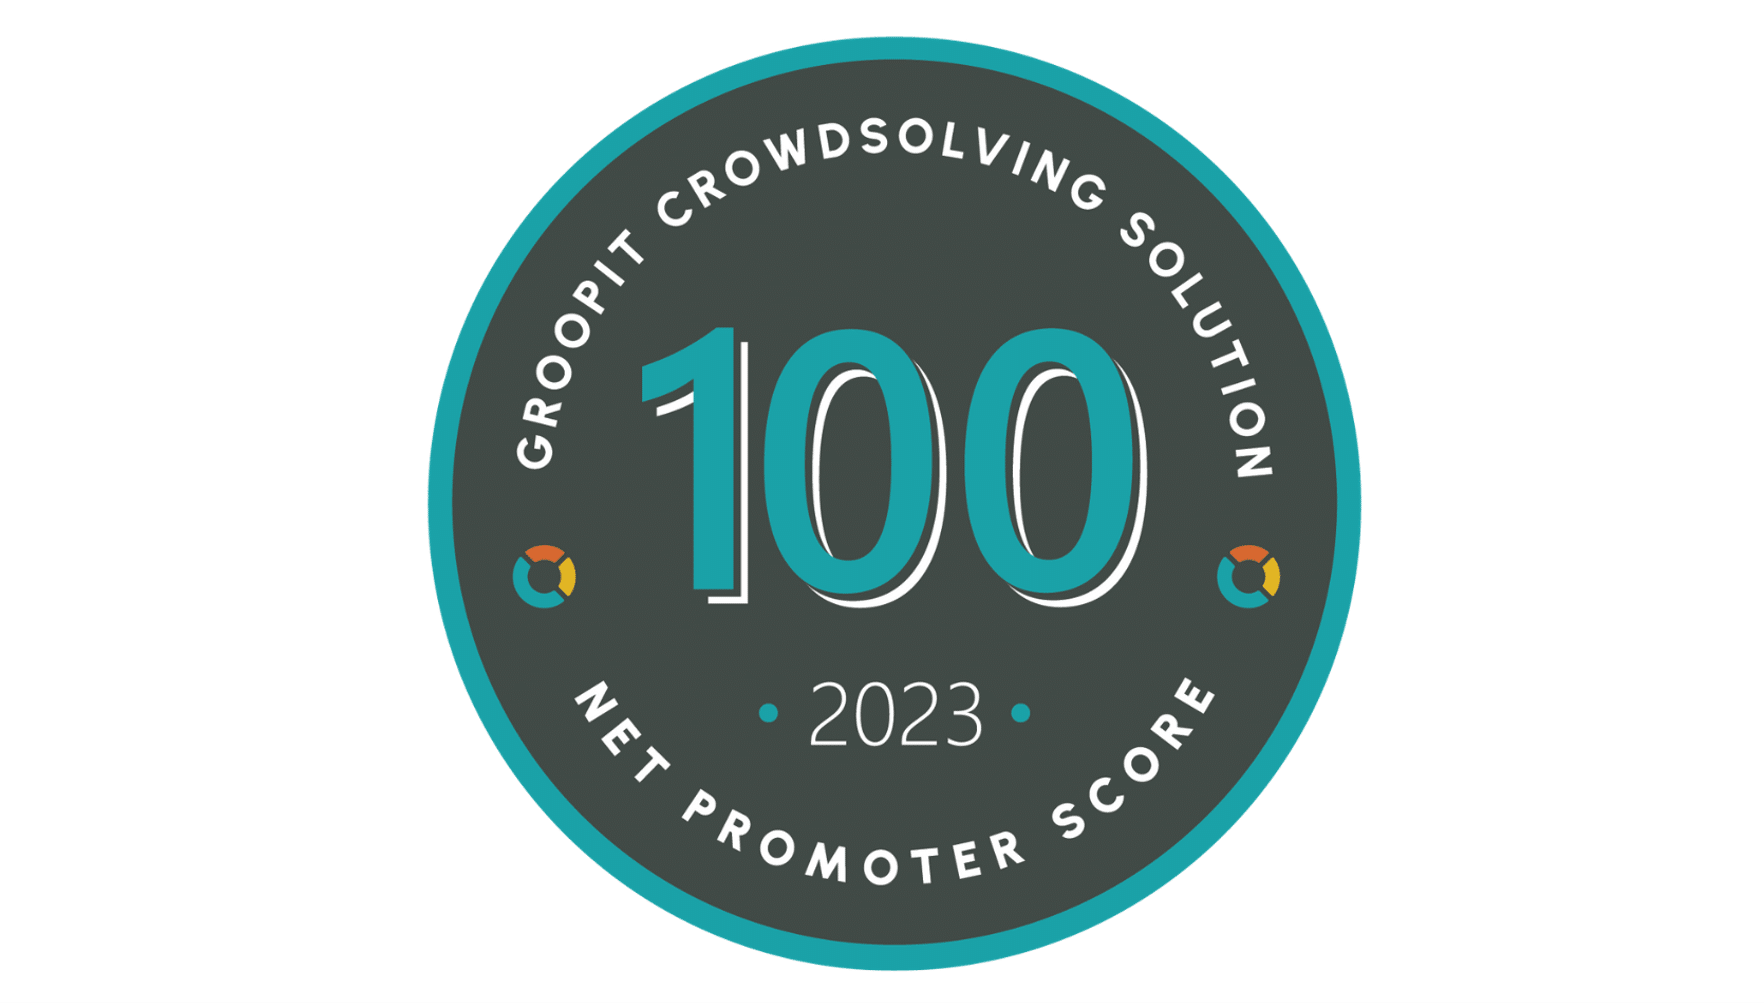 Groopit NPS Score of 100